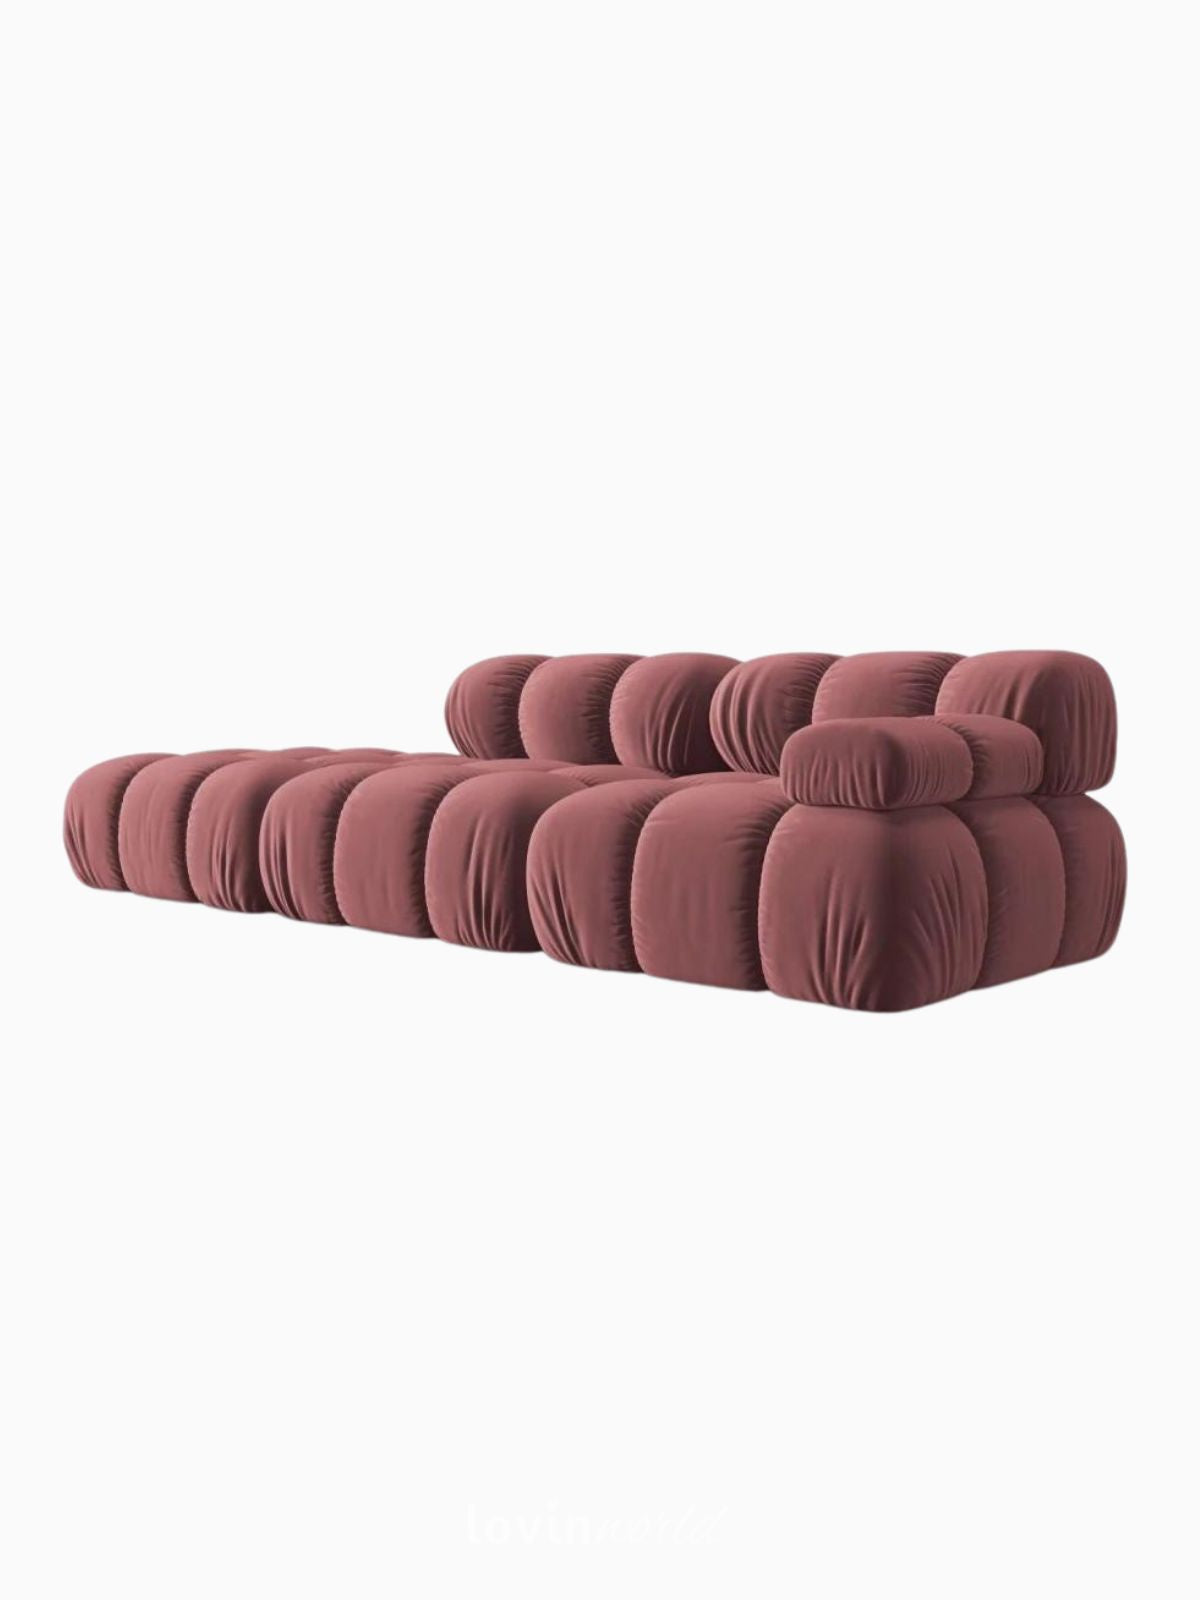 Divano modulare 4 sedute Bellis in velluto, colore rosa-3